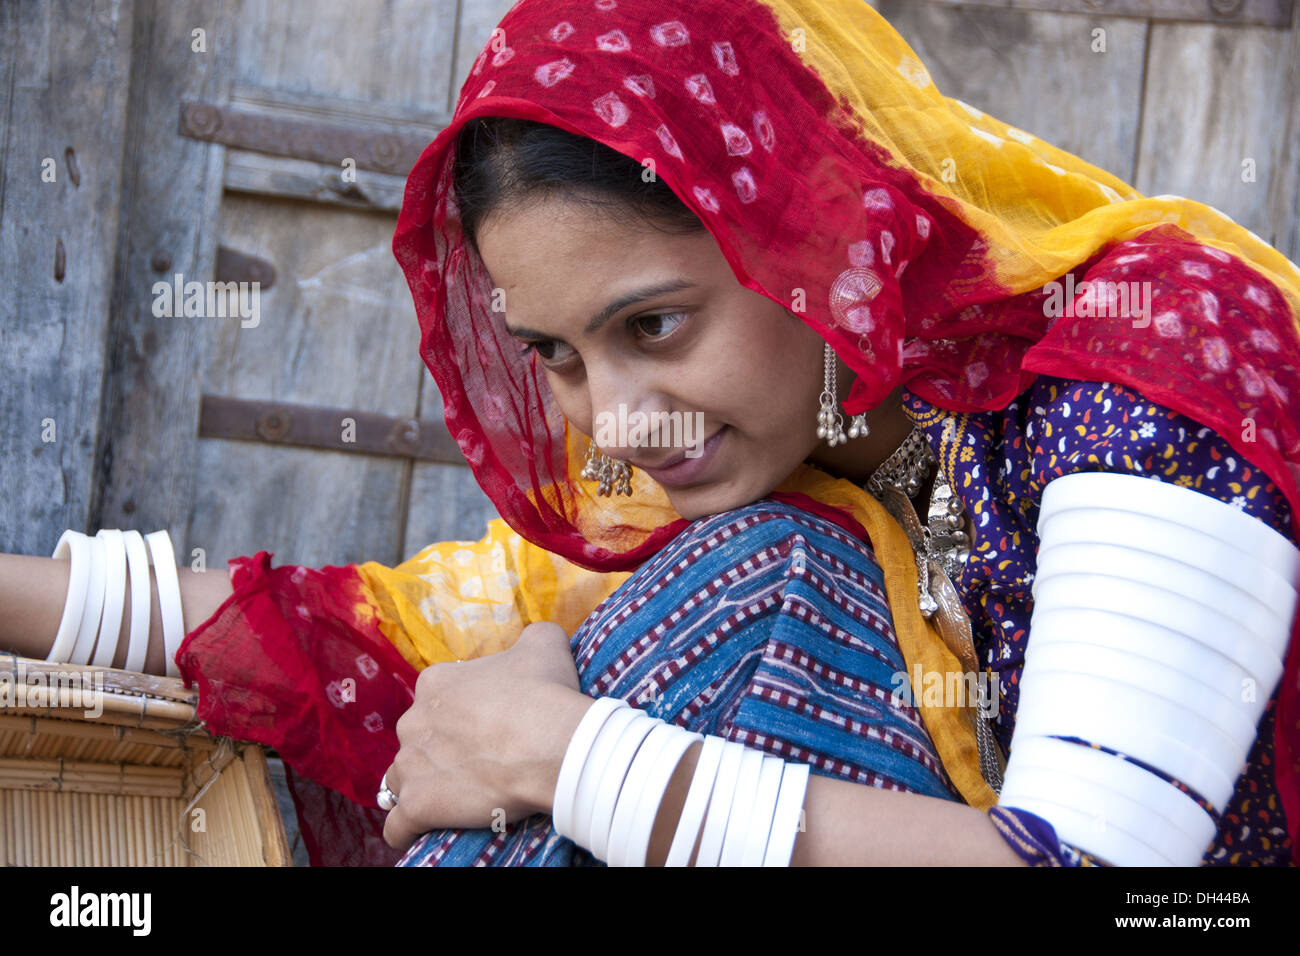 Indische Frau in traditioneller Kleidung Jodhpur Rajasthan Indien Herr #786 Stockfoto